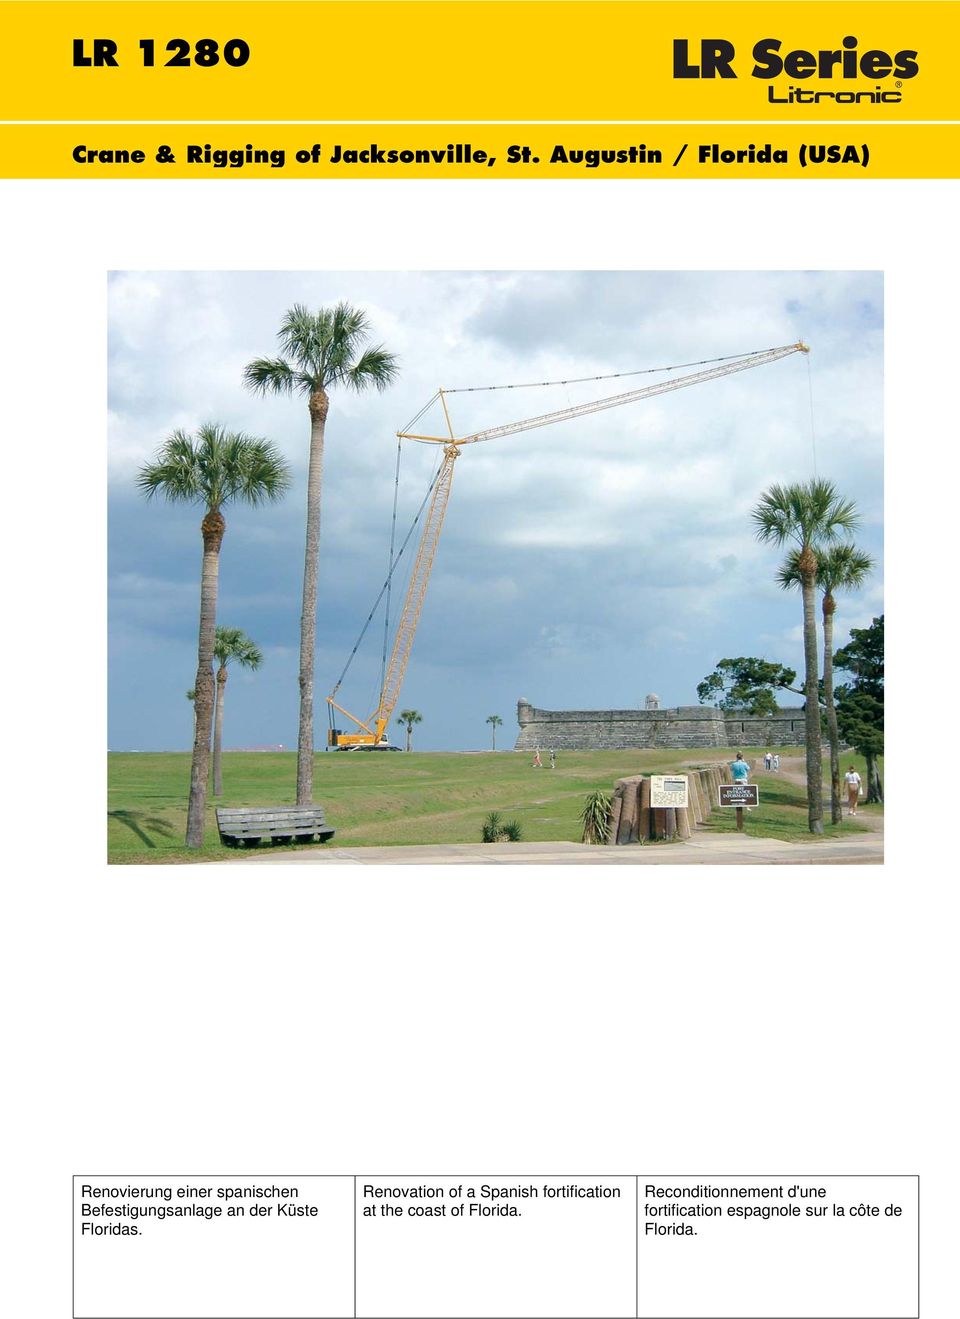 Befestigungsanlage an der Küste Floridas.